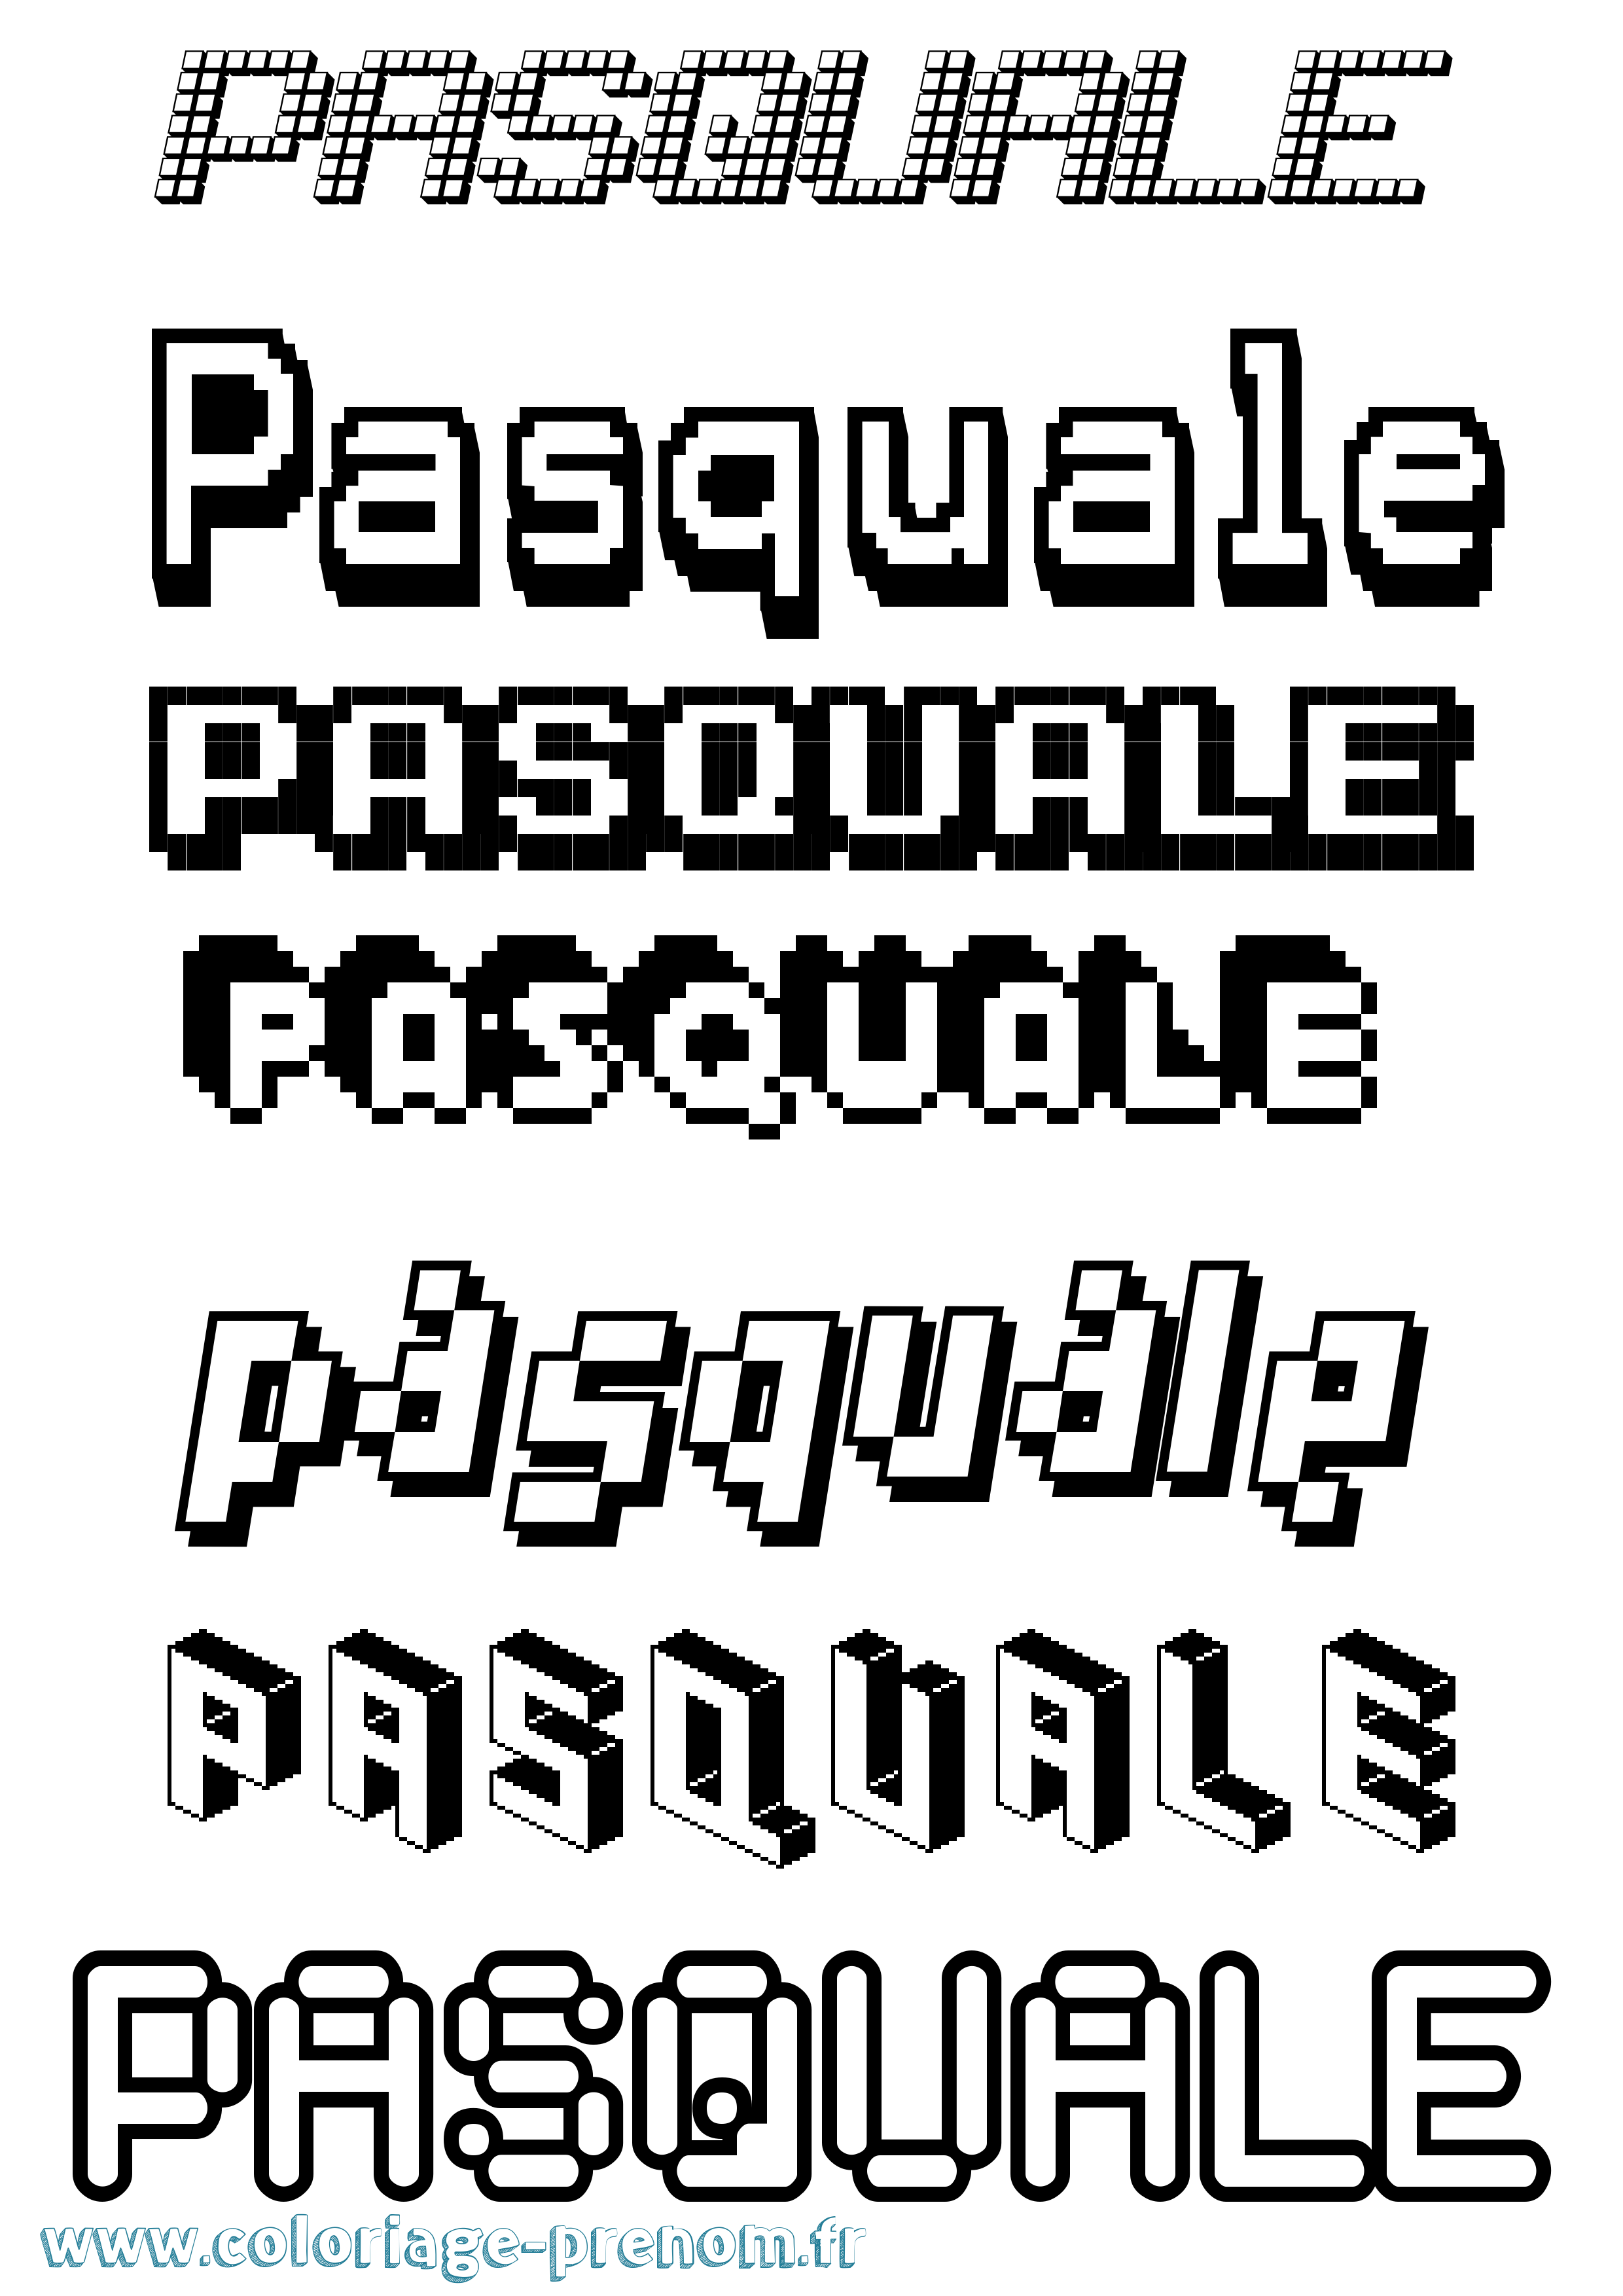 Coloriage prénom Pasquale Pixel